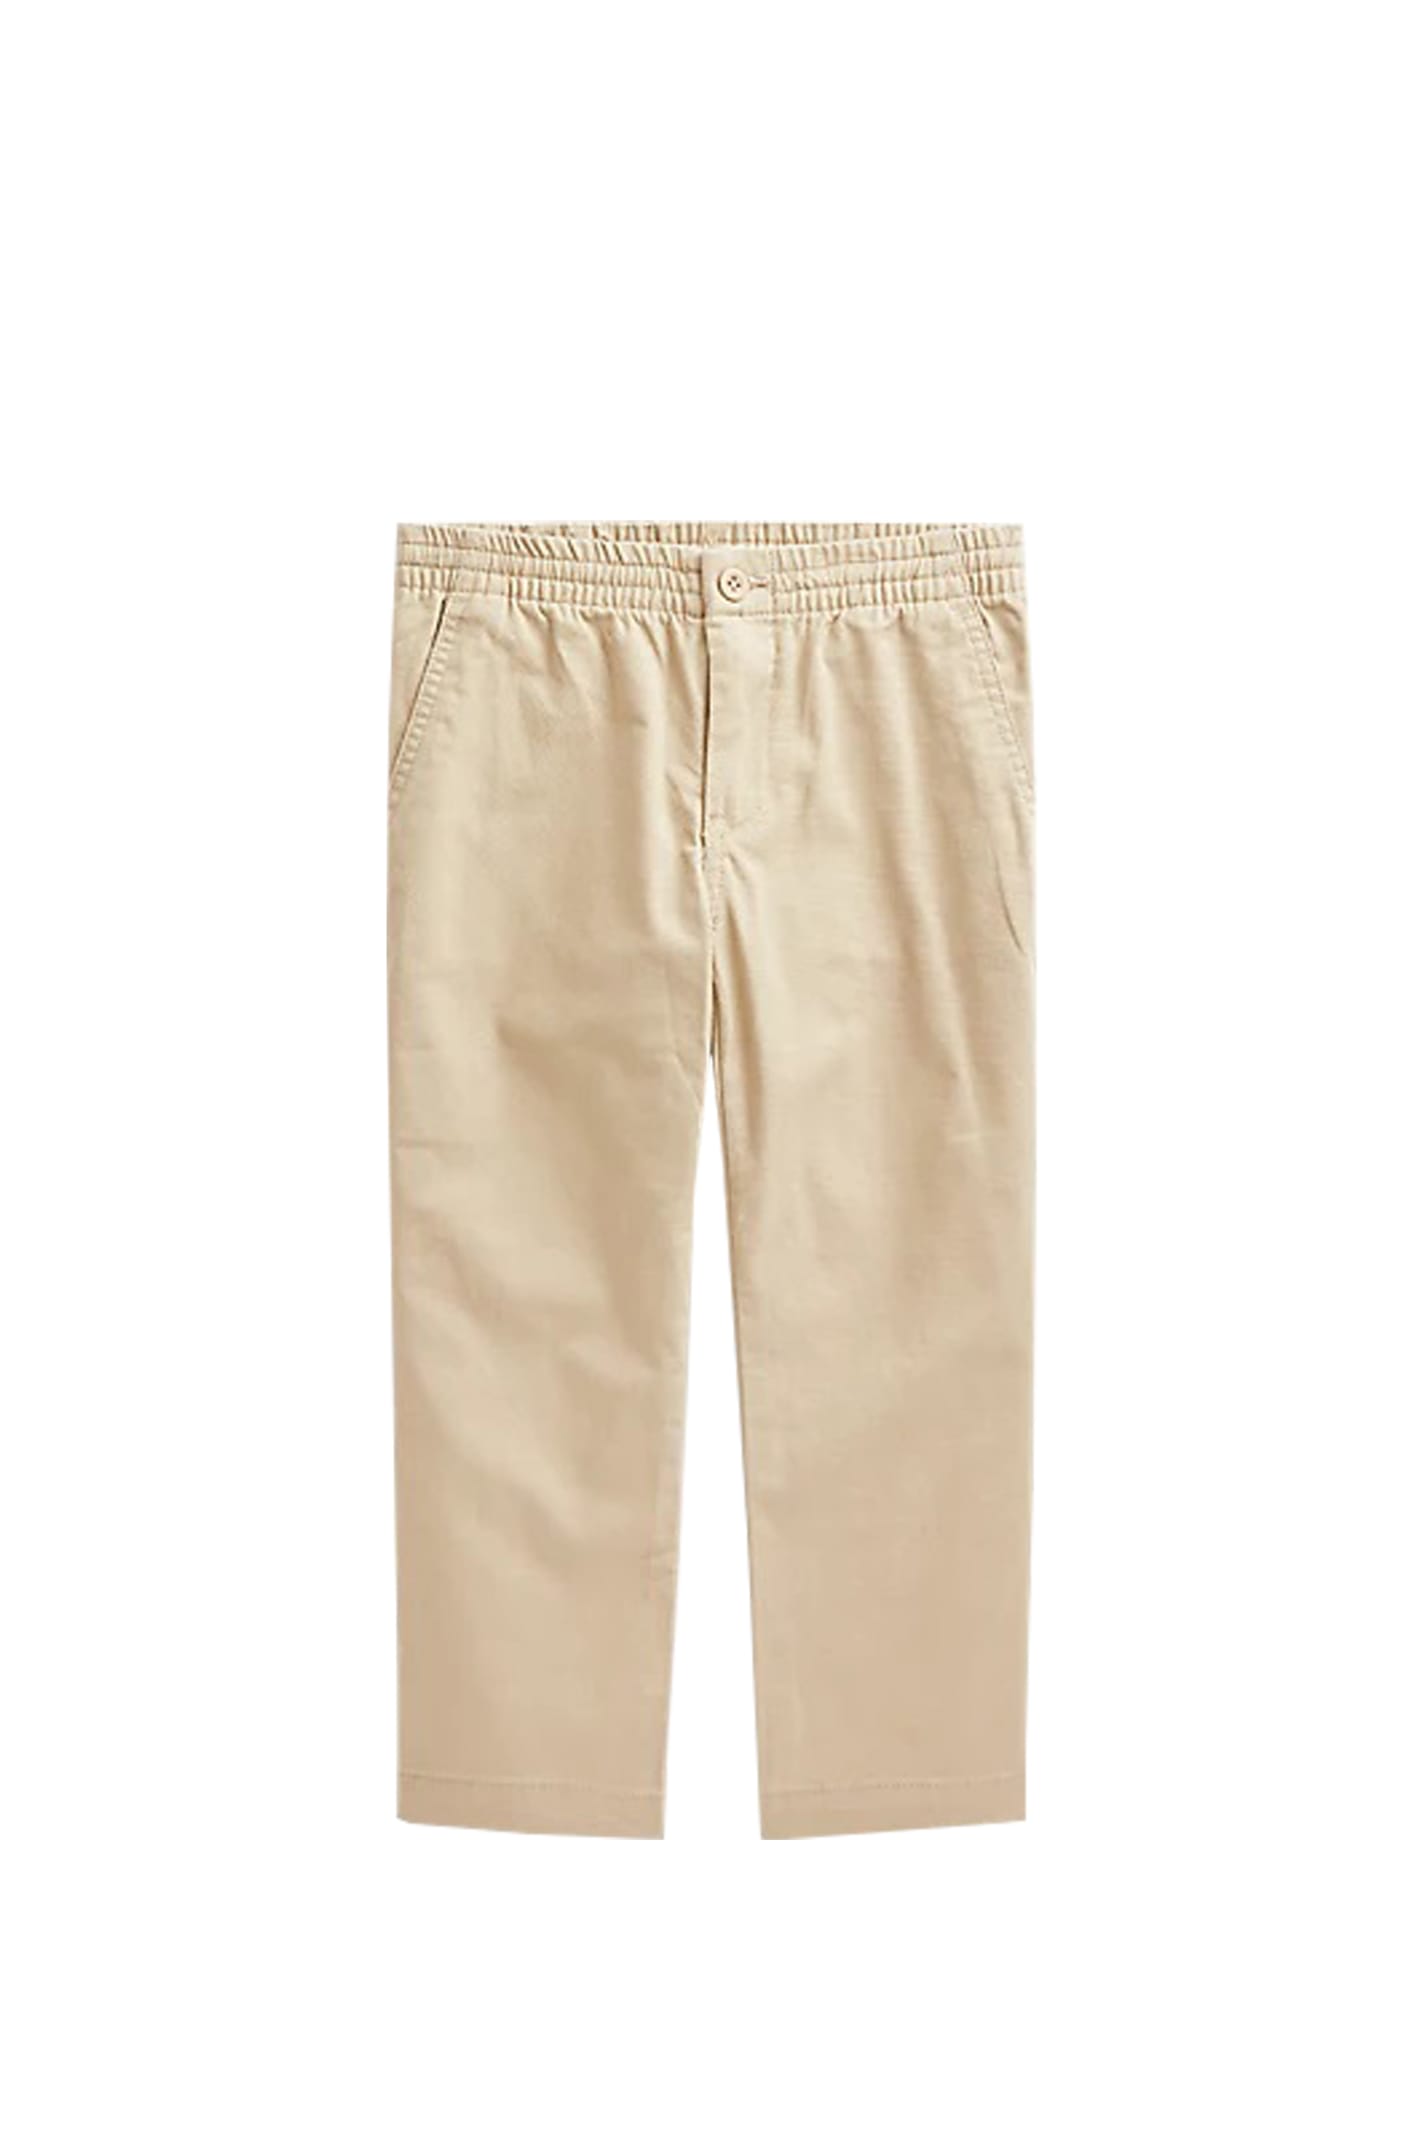 Ralph Lauren Kids' Cotton Pants In Beige